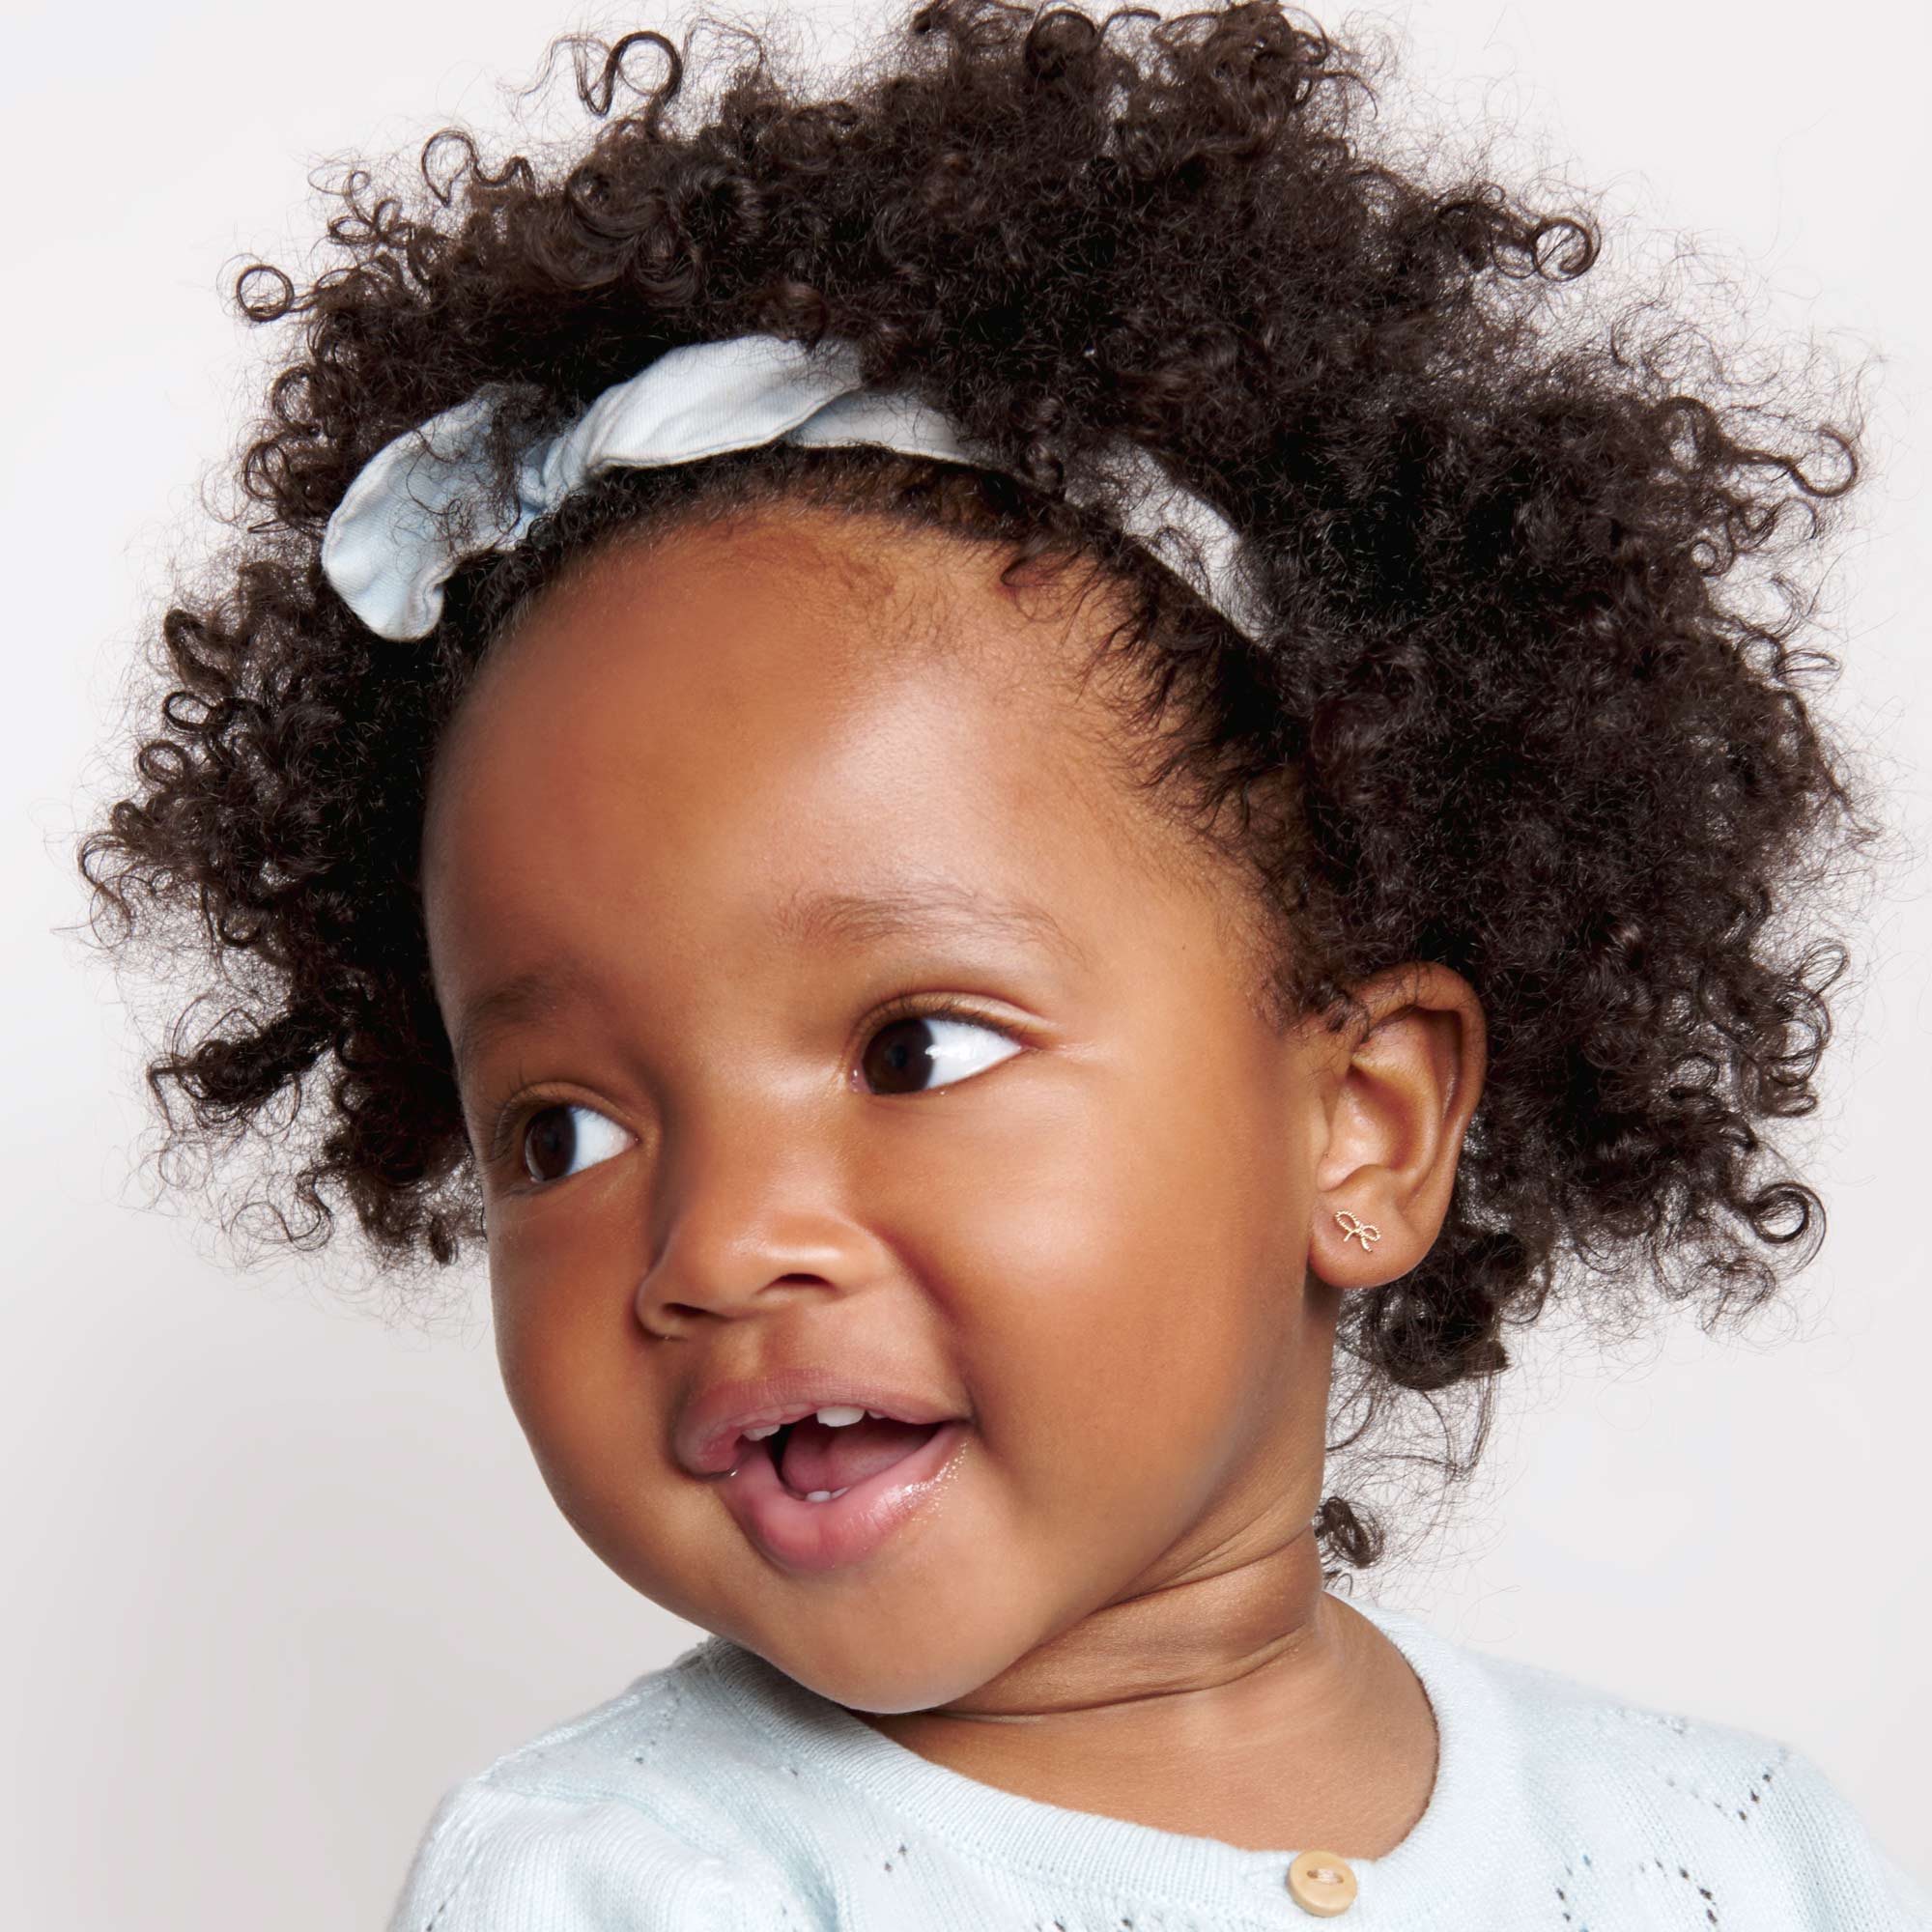 When Can Babies Get Their Ears Pierced?